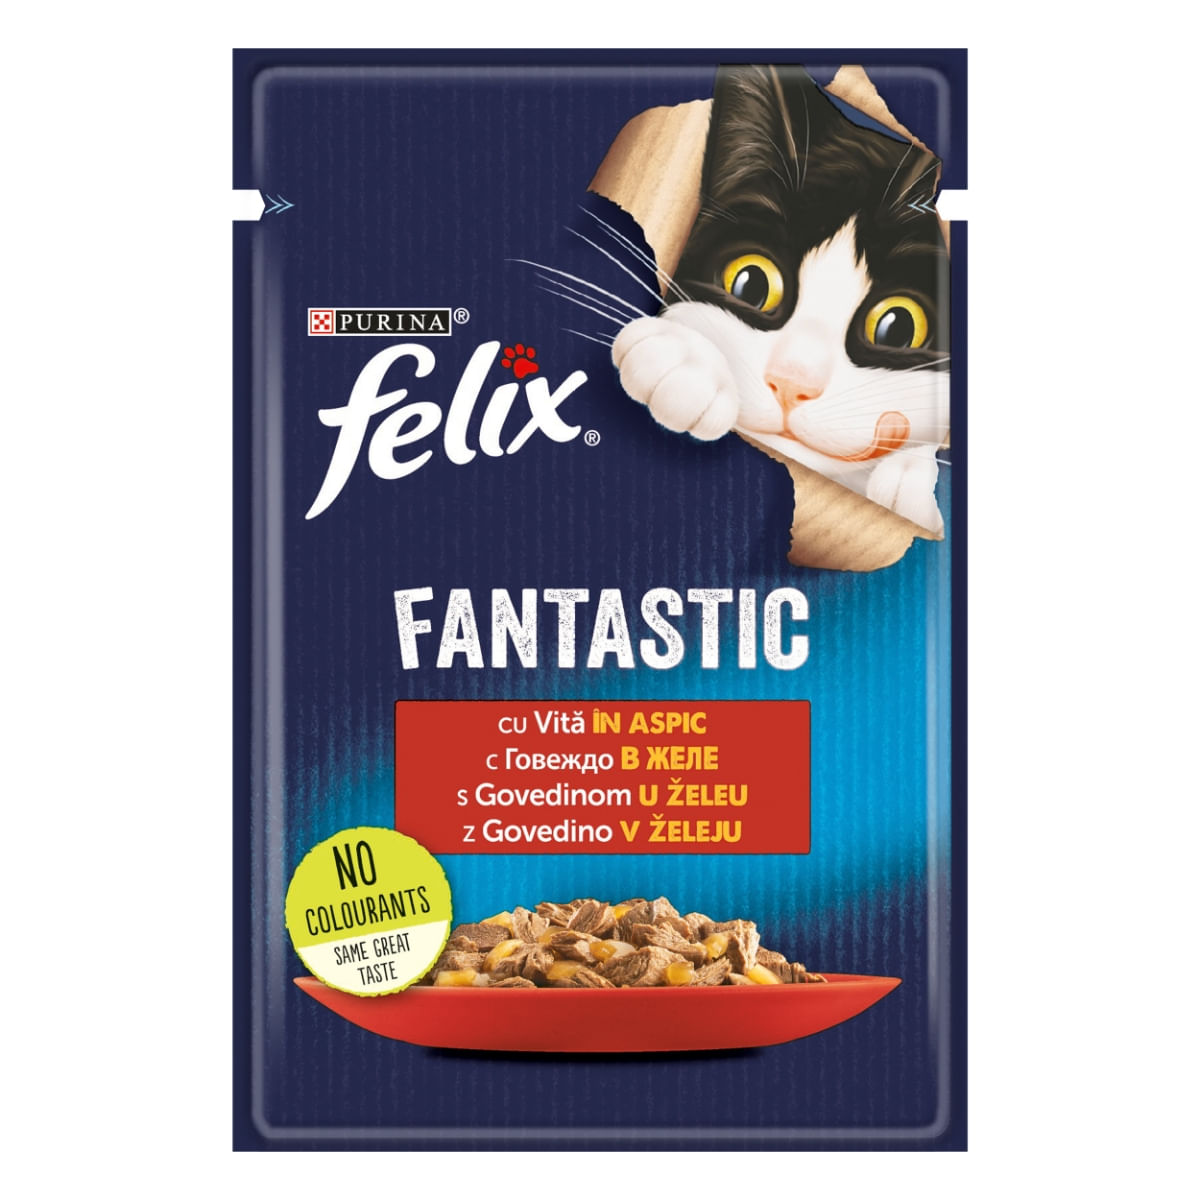 PURINA Felix Fantastic, Vită, hrană umedă pisici, (în aspic) PURINA Felix Fantastic, Vită, plic hrană umedă pisici, (în aspic), 85g